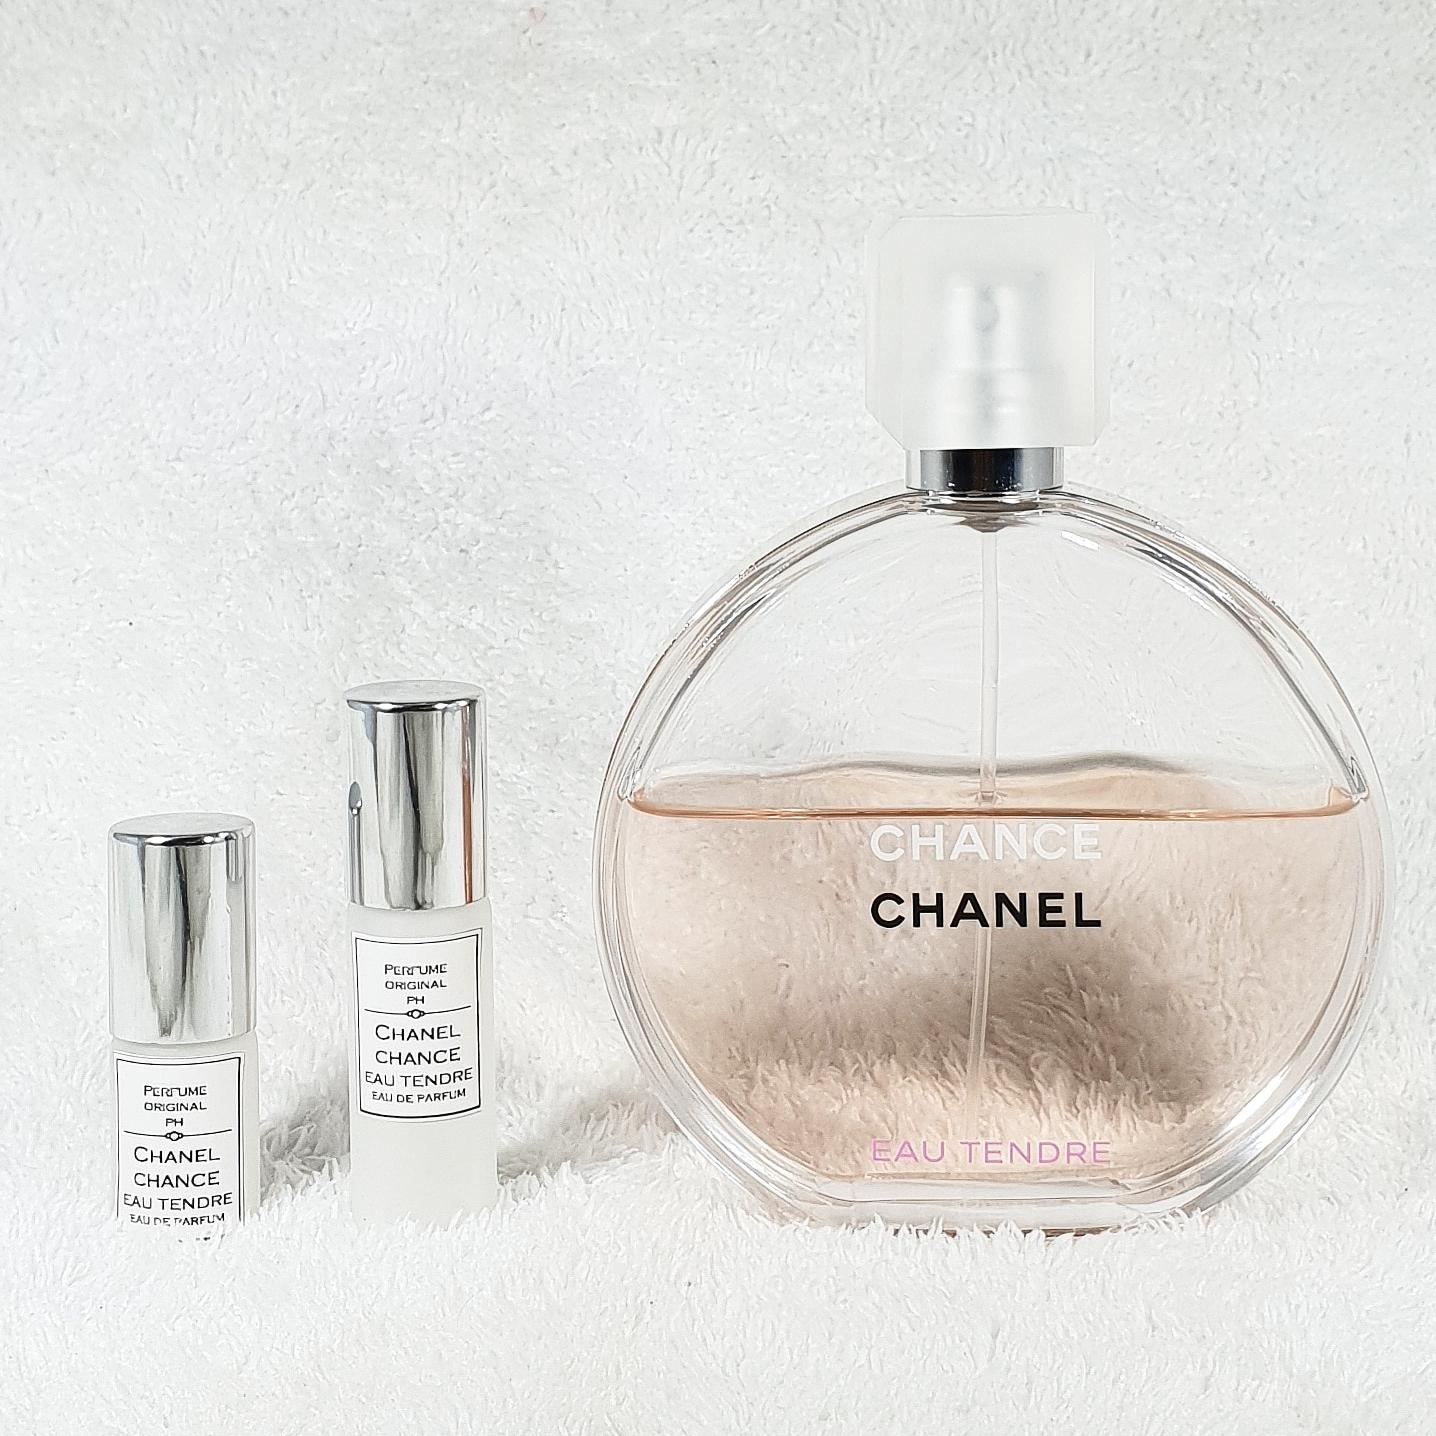 Dossier‐ Chanel Chance Eau Tendre 